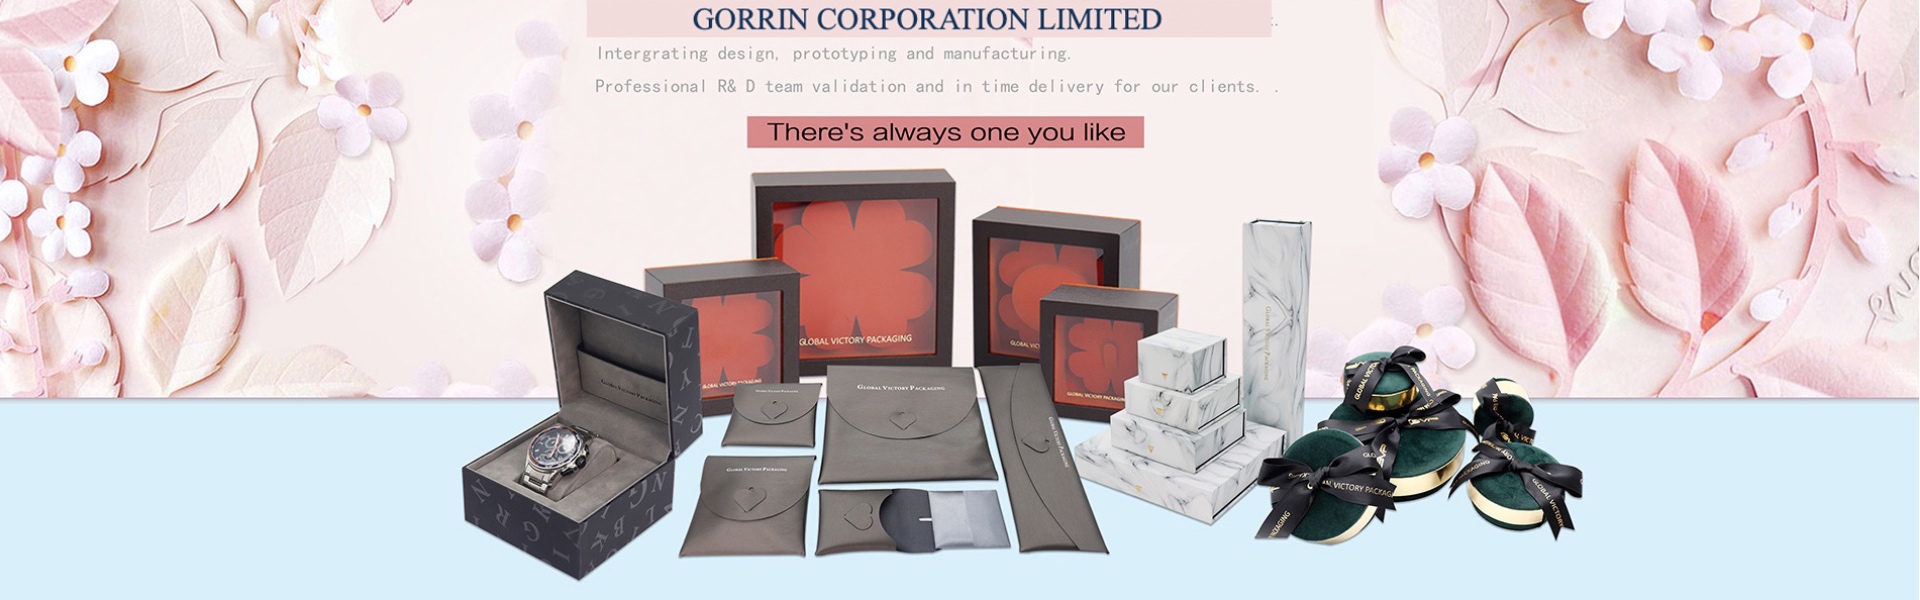 carta, gioielli, portagioie,Gorrin corporation limited